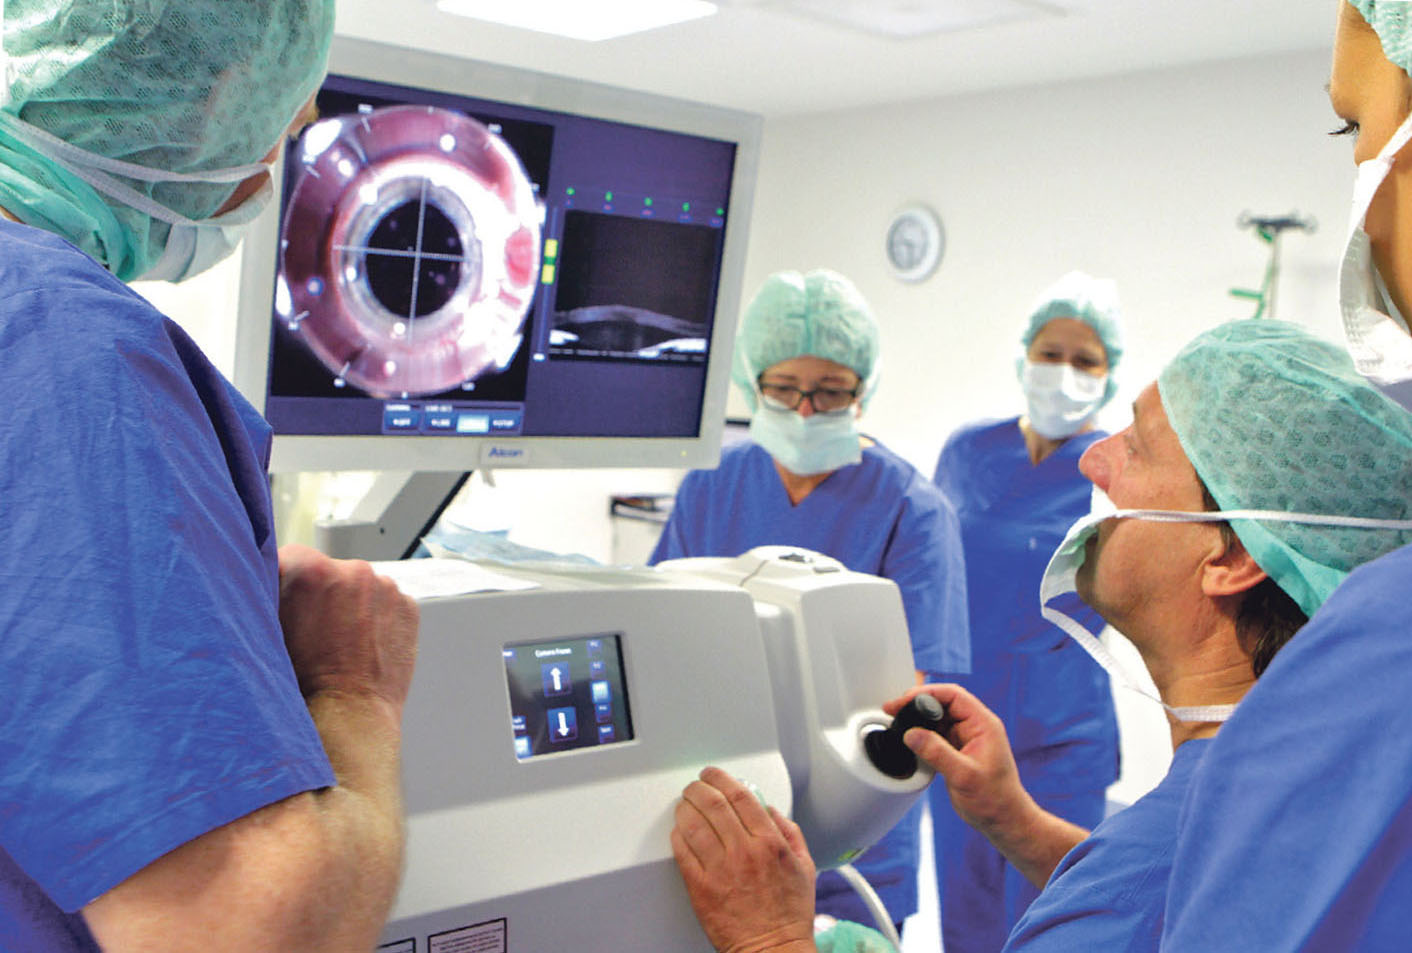 Ralph Herrmann vom Hildesheimer Augenzentrum setzt bei der Operation des grauen Star mit der neusten Lasertechnik auf höchste Sicherheit, Präzision und noch mehr Komfort.